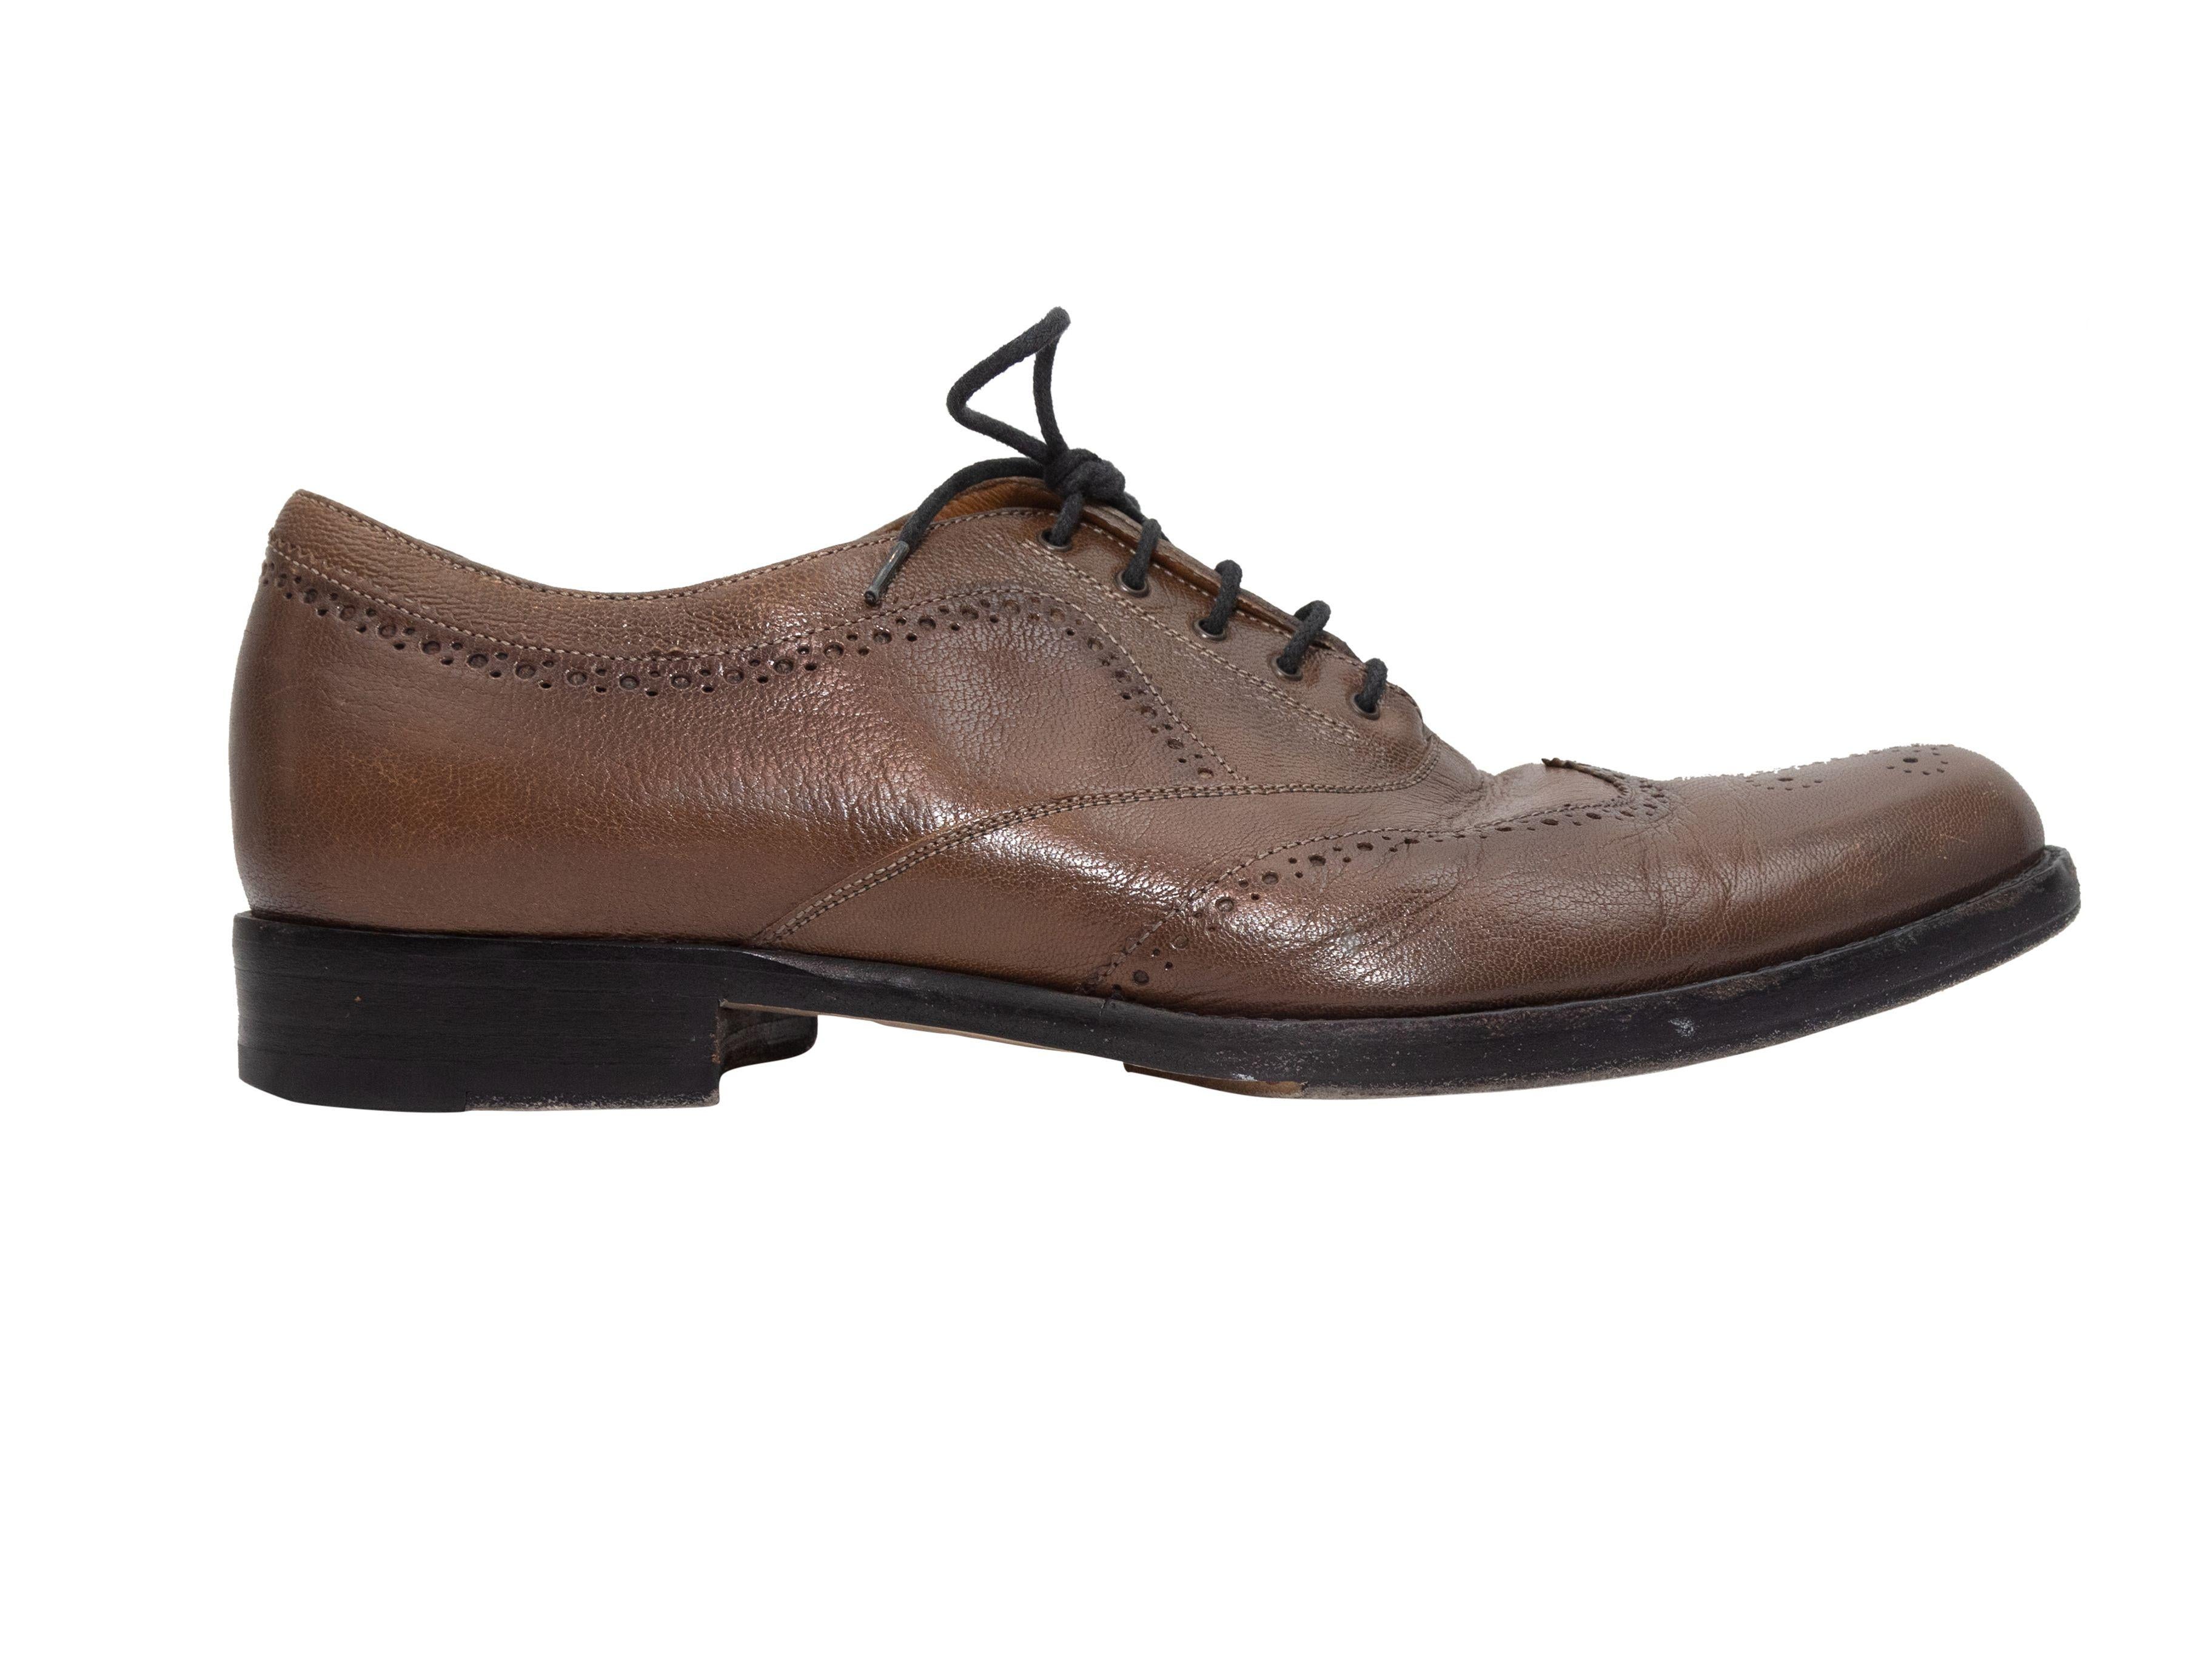 Men's Alexander McQueen Brown Leather Wingtip Oxfords